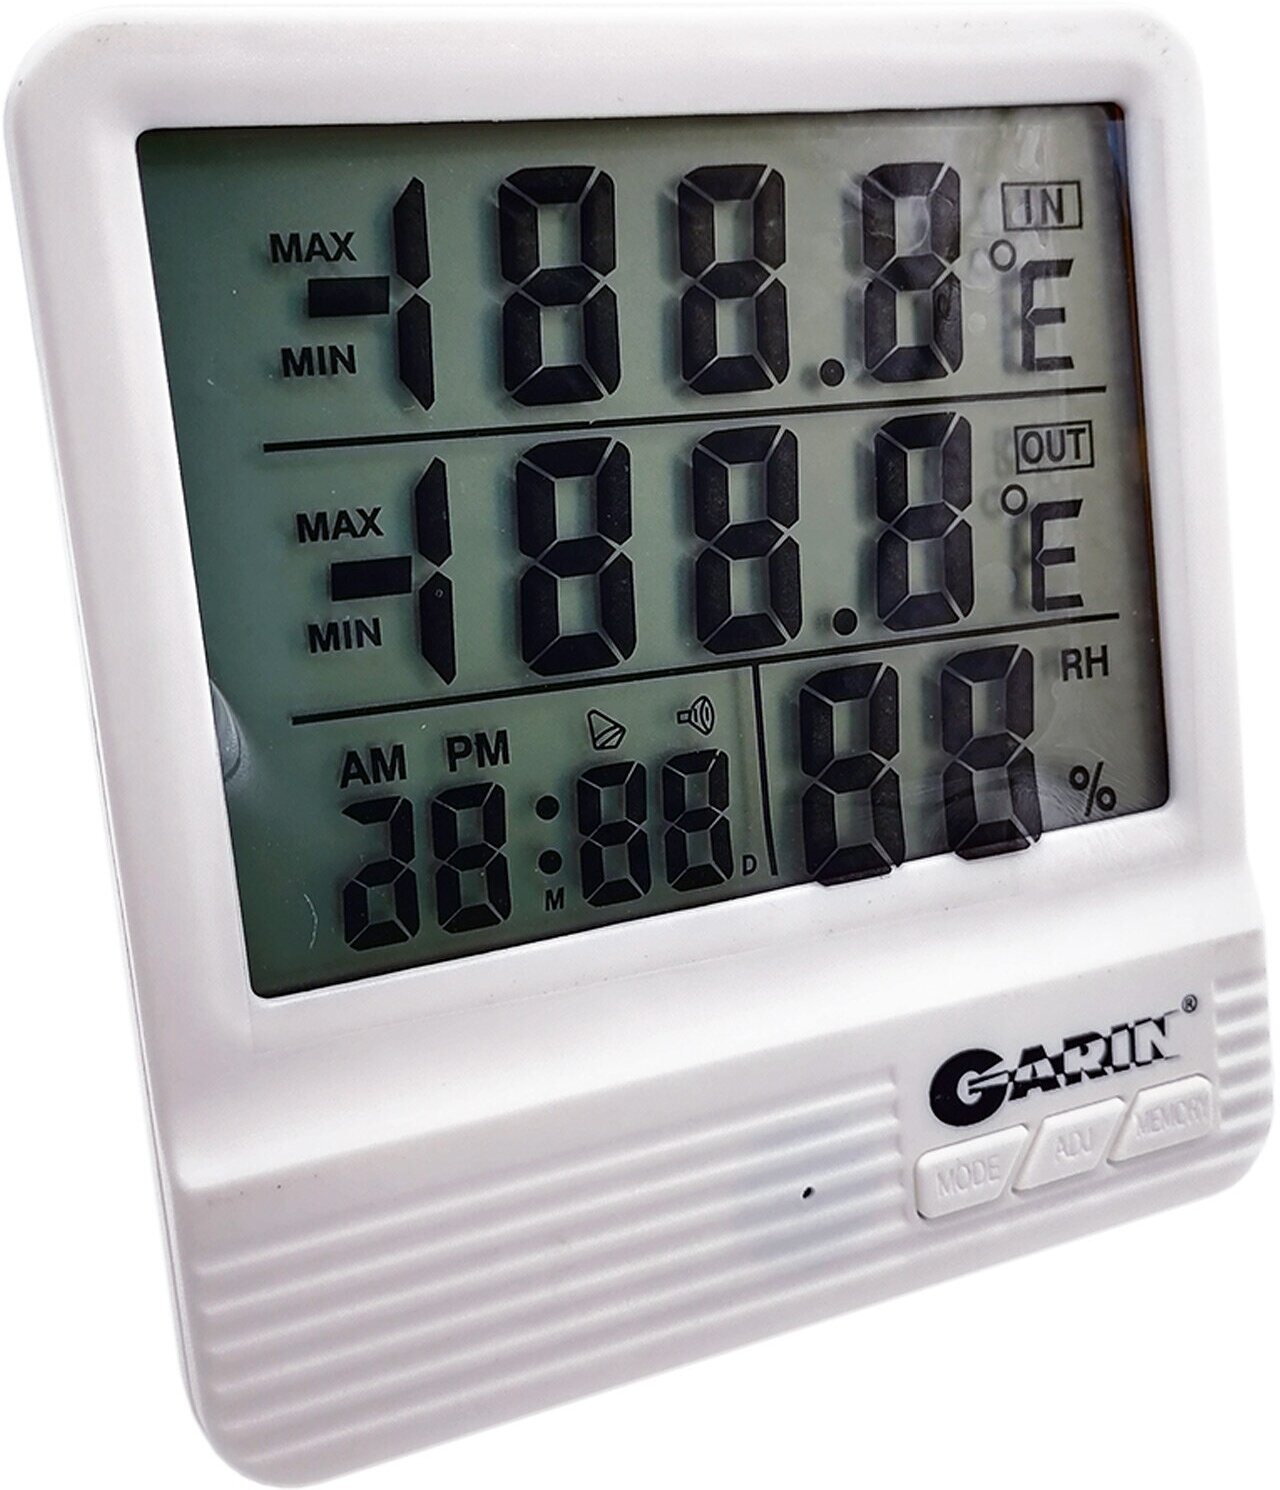 Метеостанция GARIN Точное Измерение WS-4 термометр-гигрометр-часы-календарь с внешним датчиком